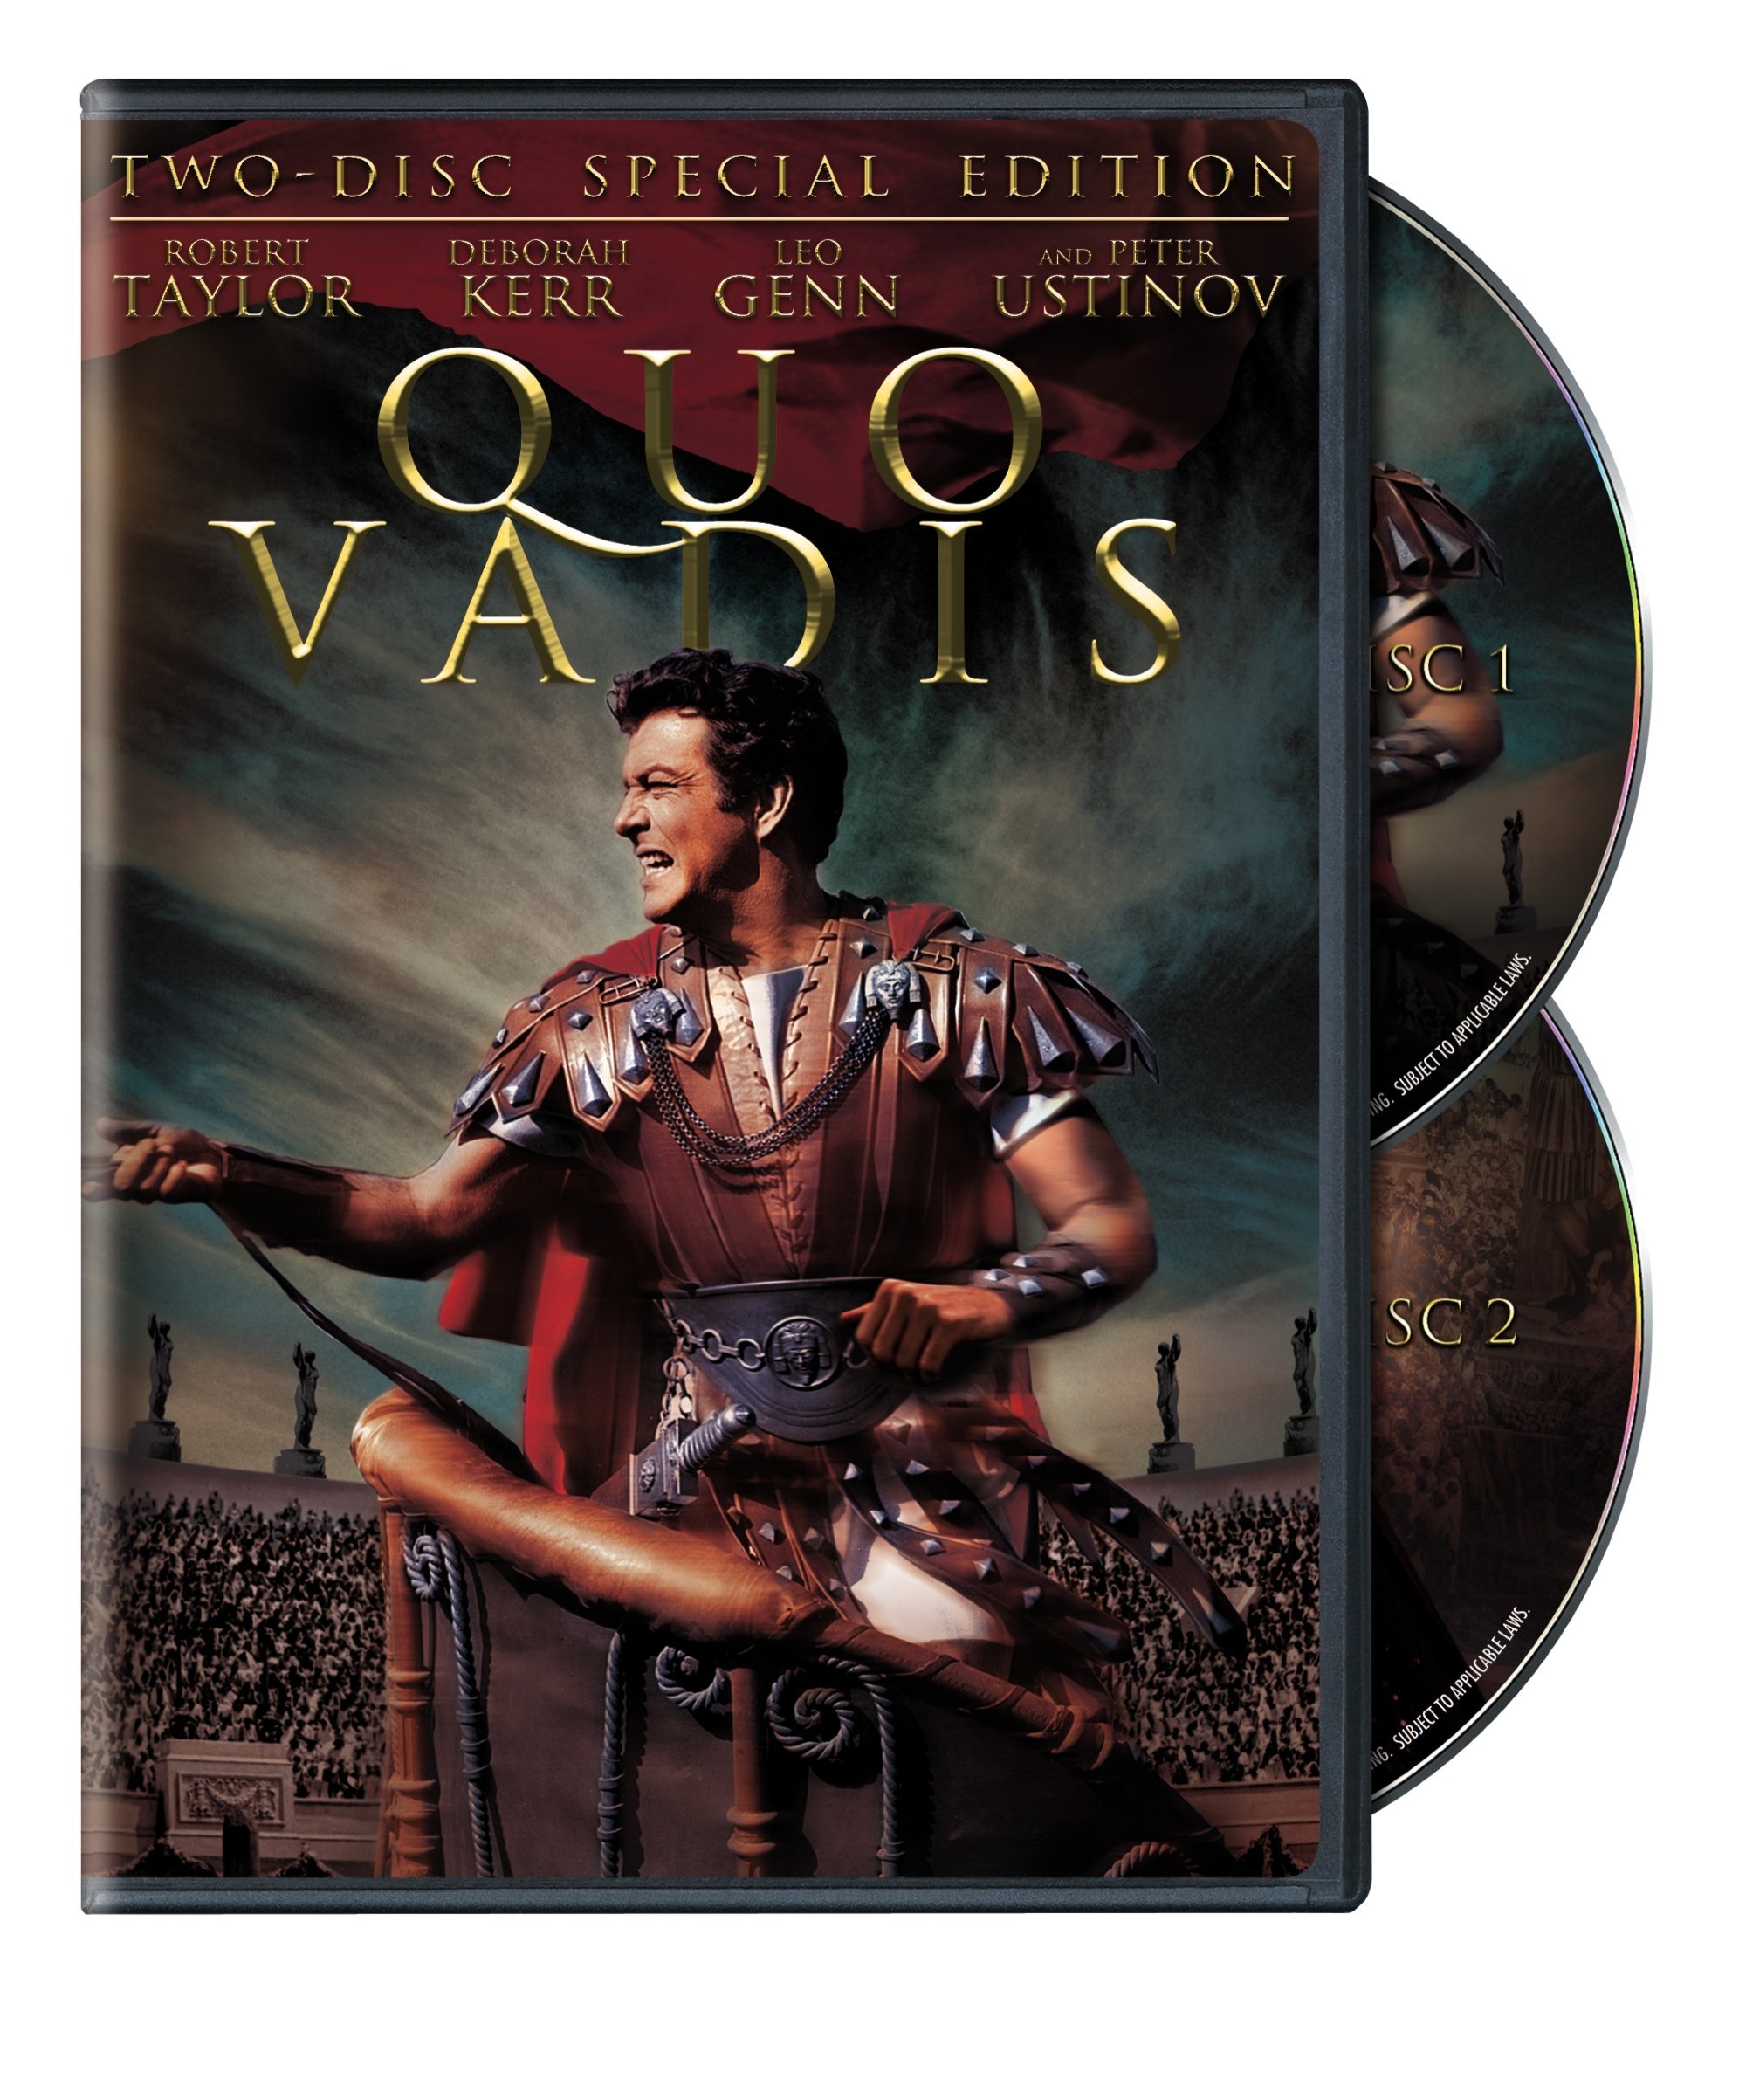 Quo Vadis (Special Edition) - DVD [ 1951 ]  - Drama Movies On DVD - Movies On GRUV